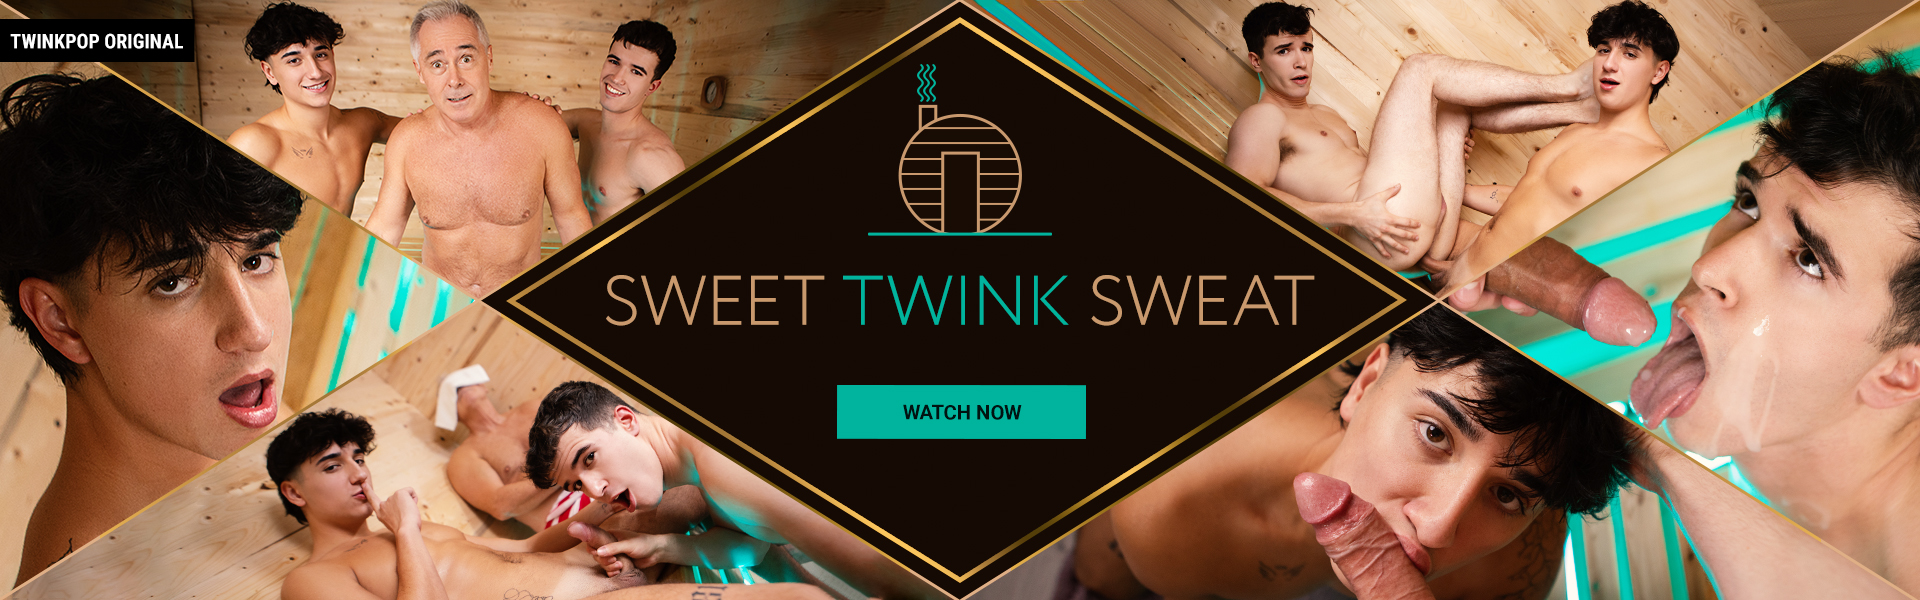 Watch Sweet Twink Sweat only on TwinkPop